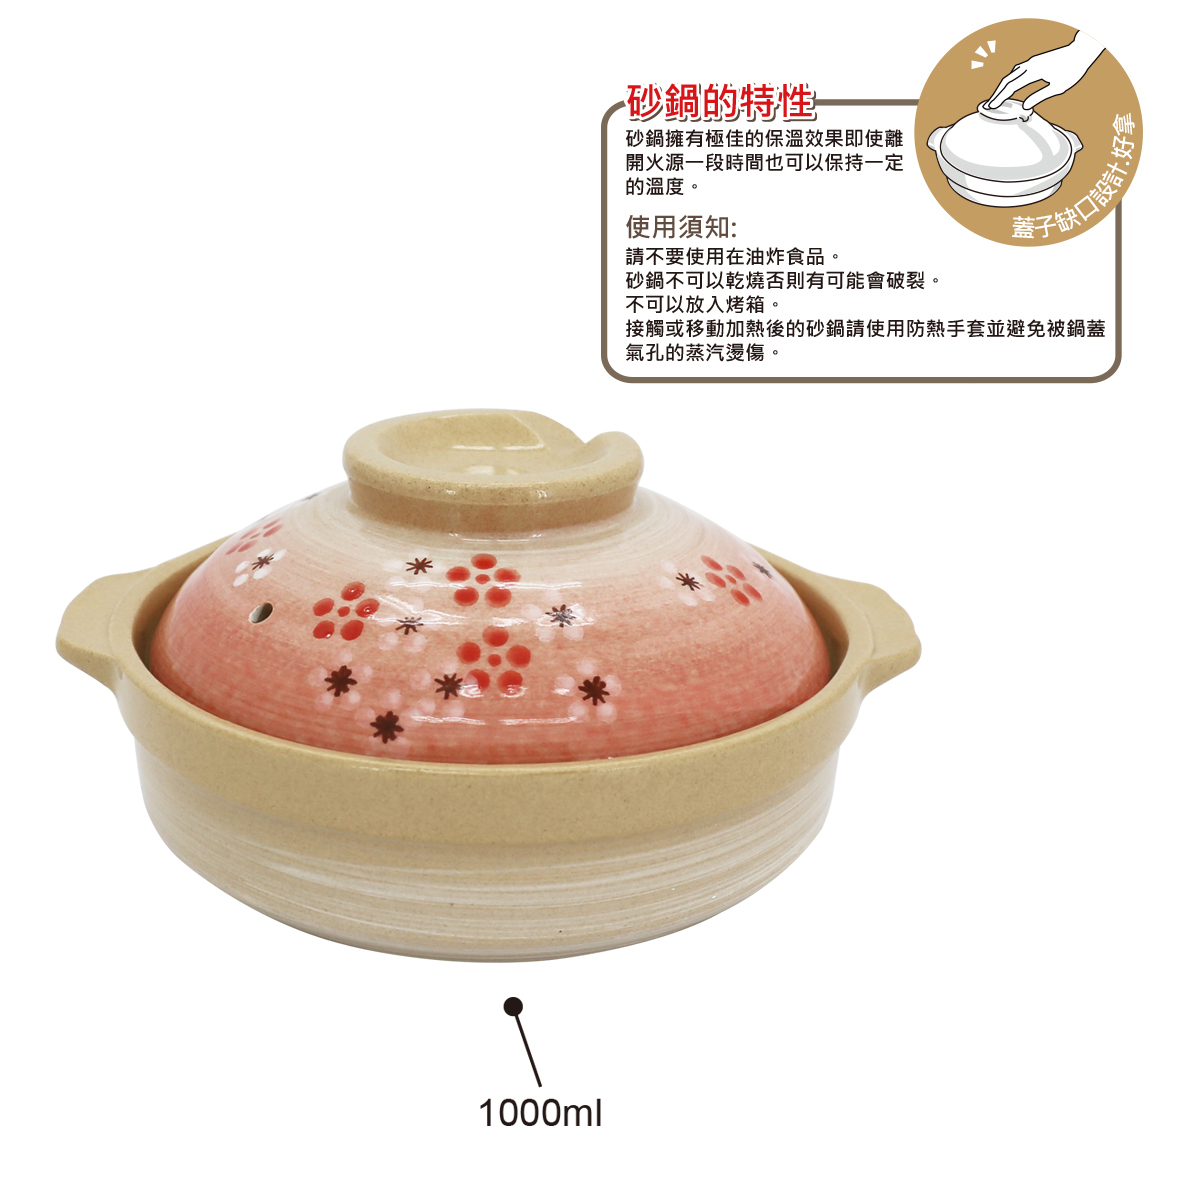 松村窯日式砂鍋7.5"-紅梅